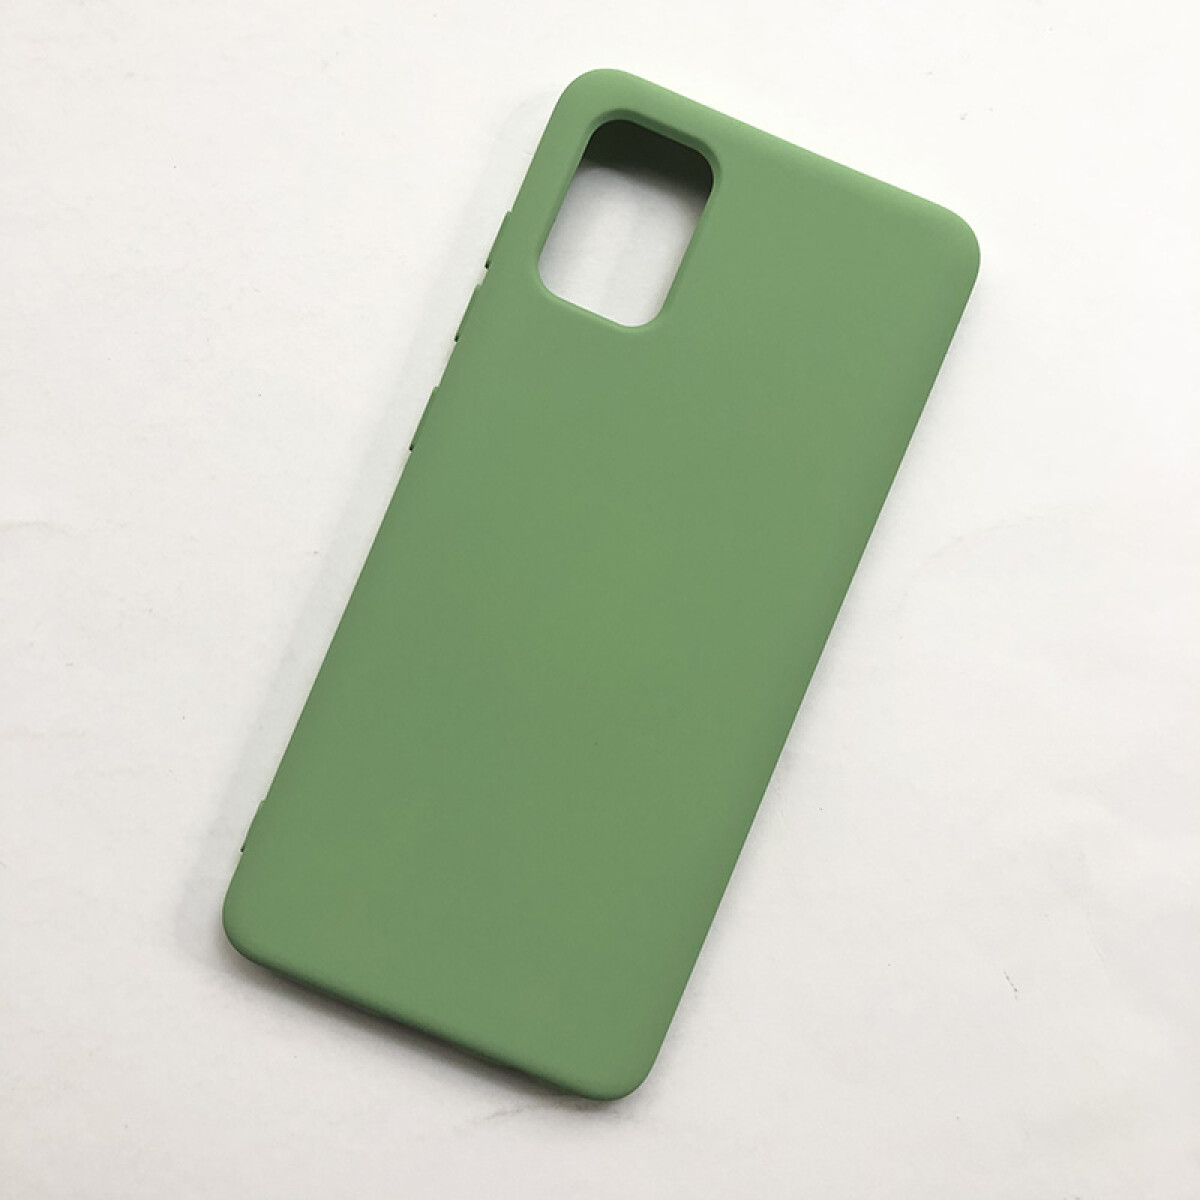 Protector de silicona para Samsung A51 verde 